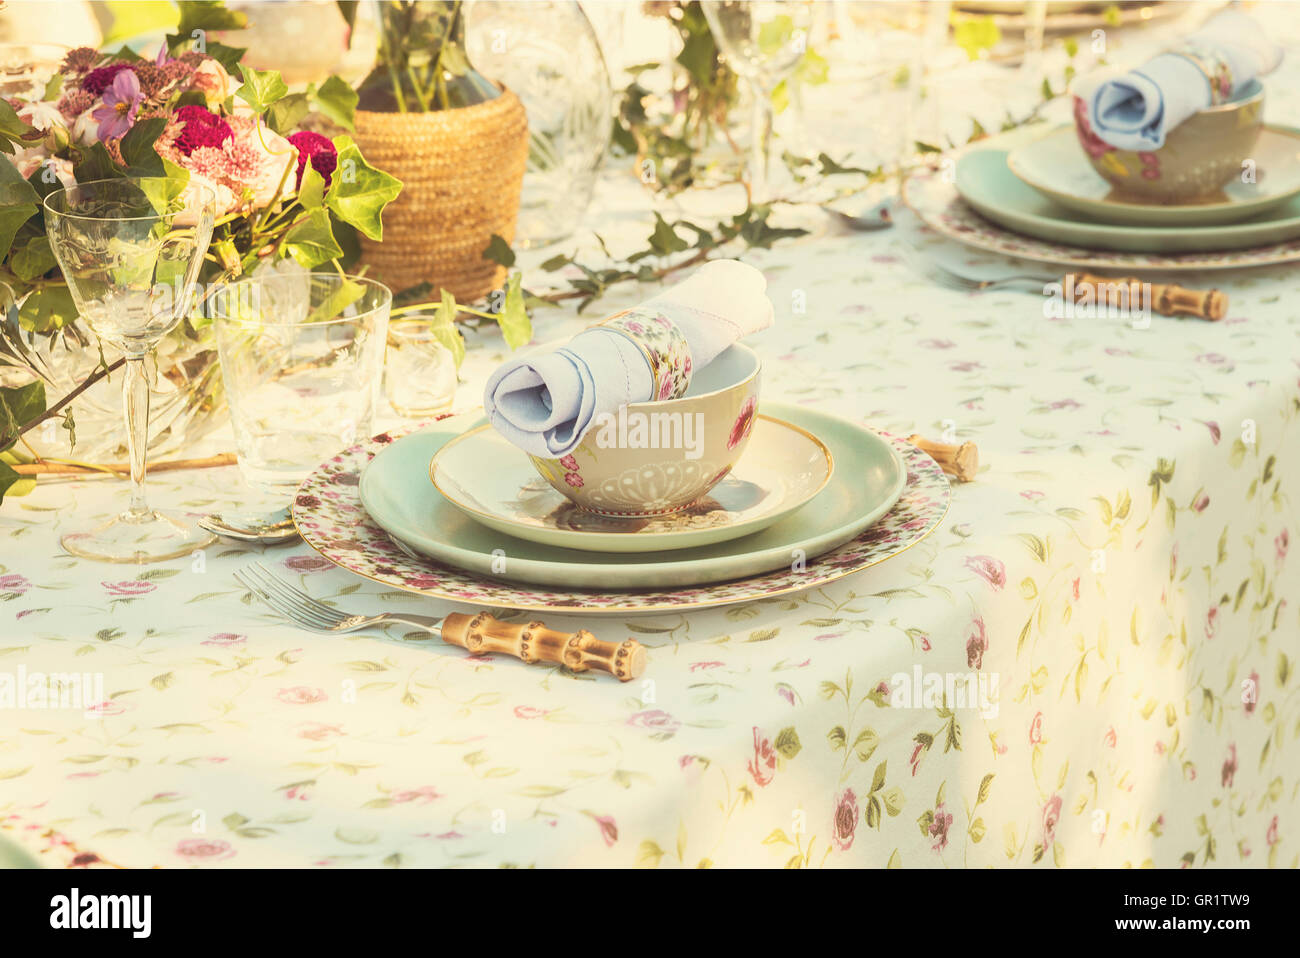 Immagine di impostazione tabella per matrimonio o party in giardino. Foto Stock